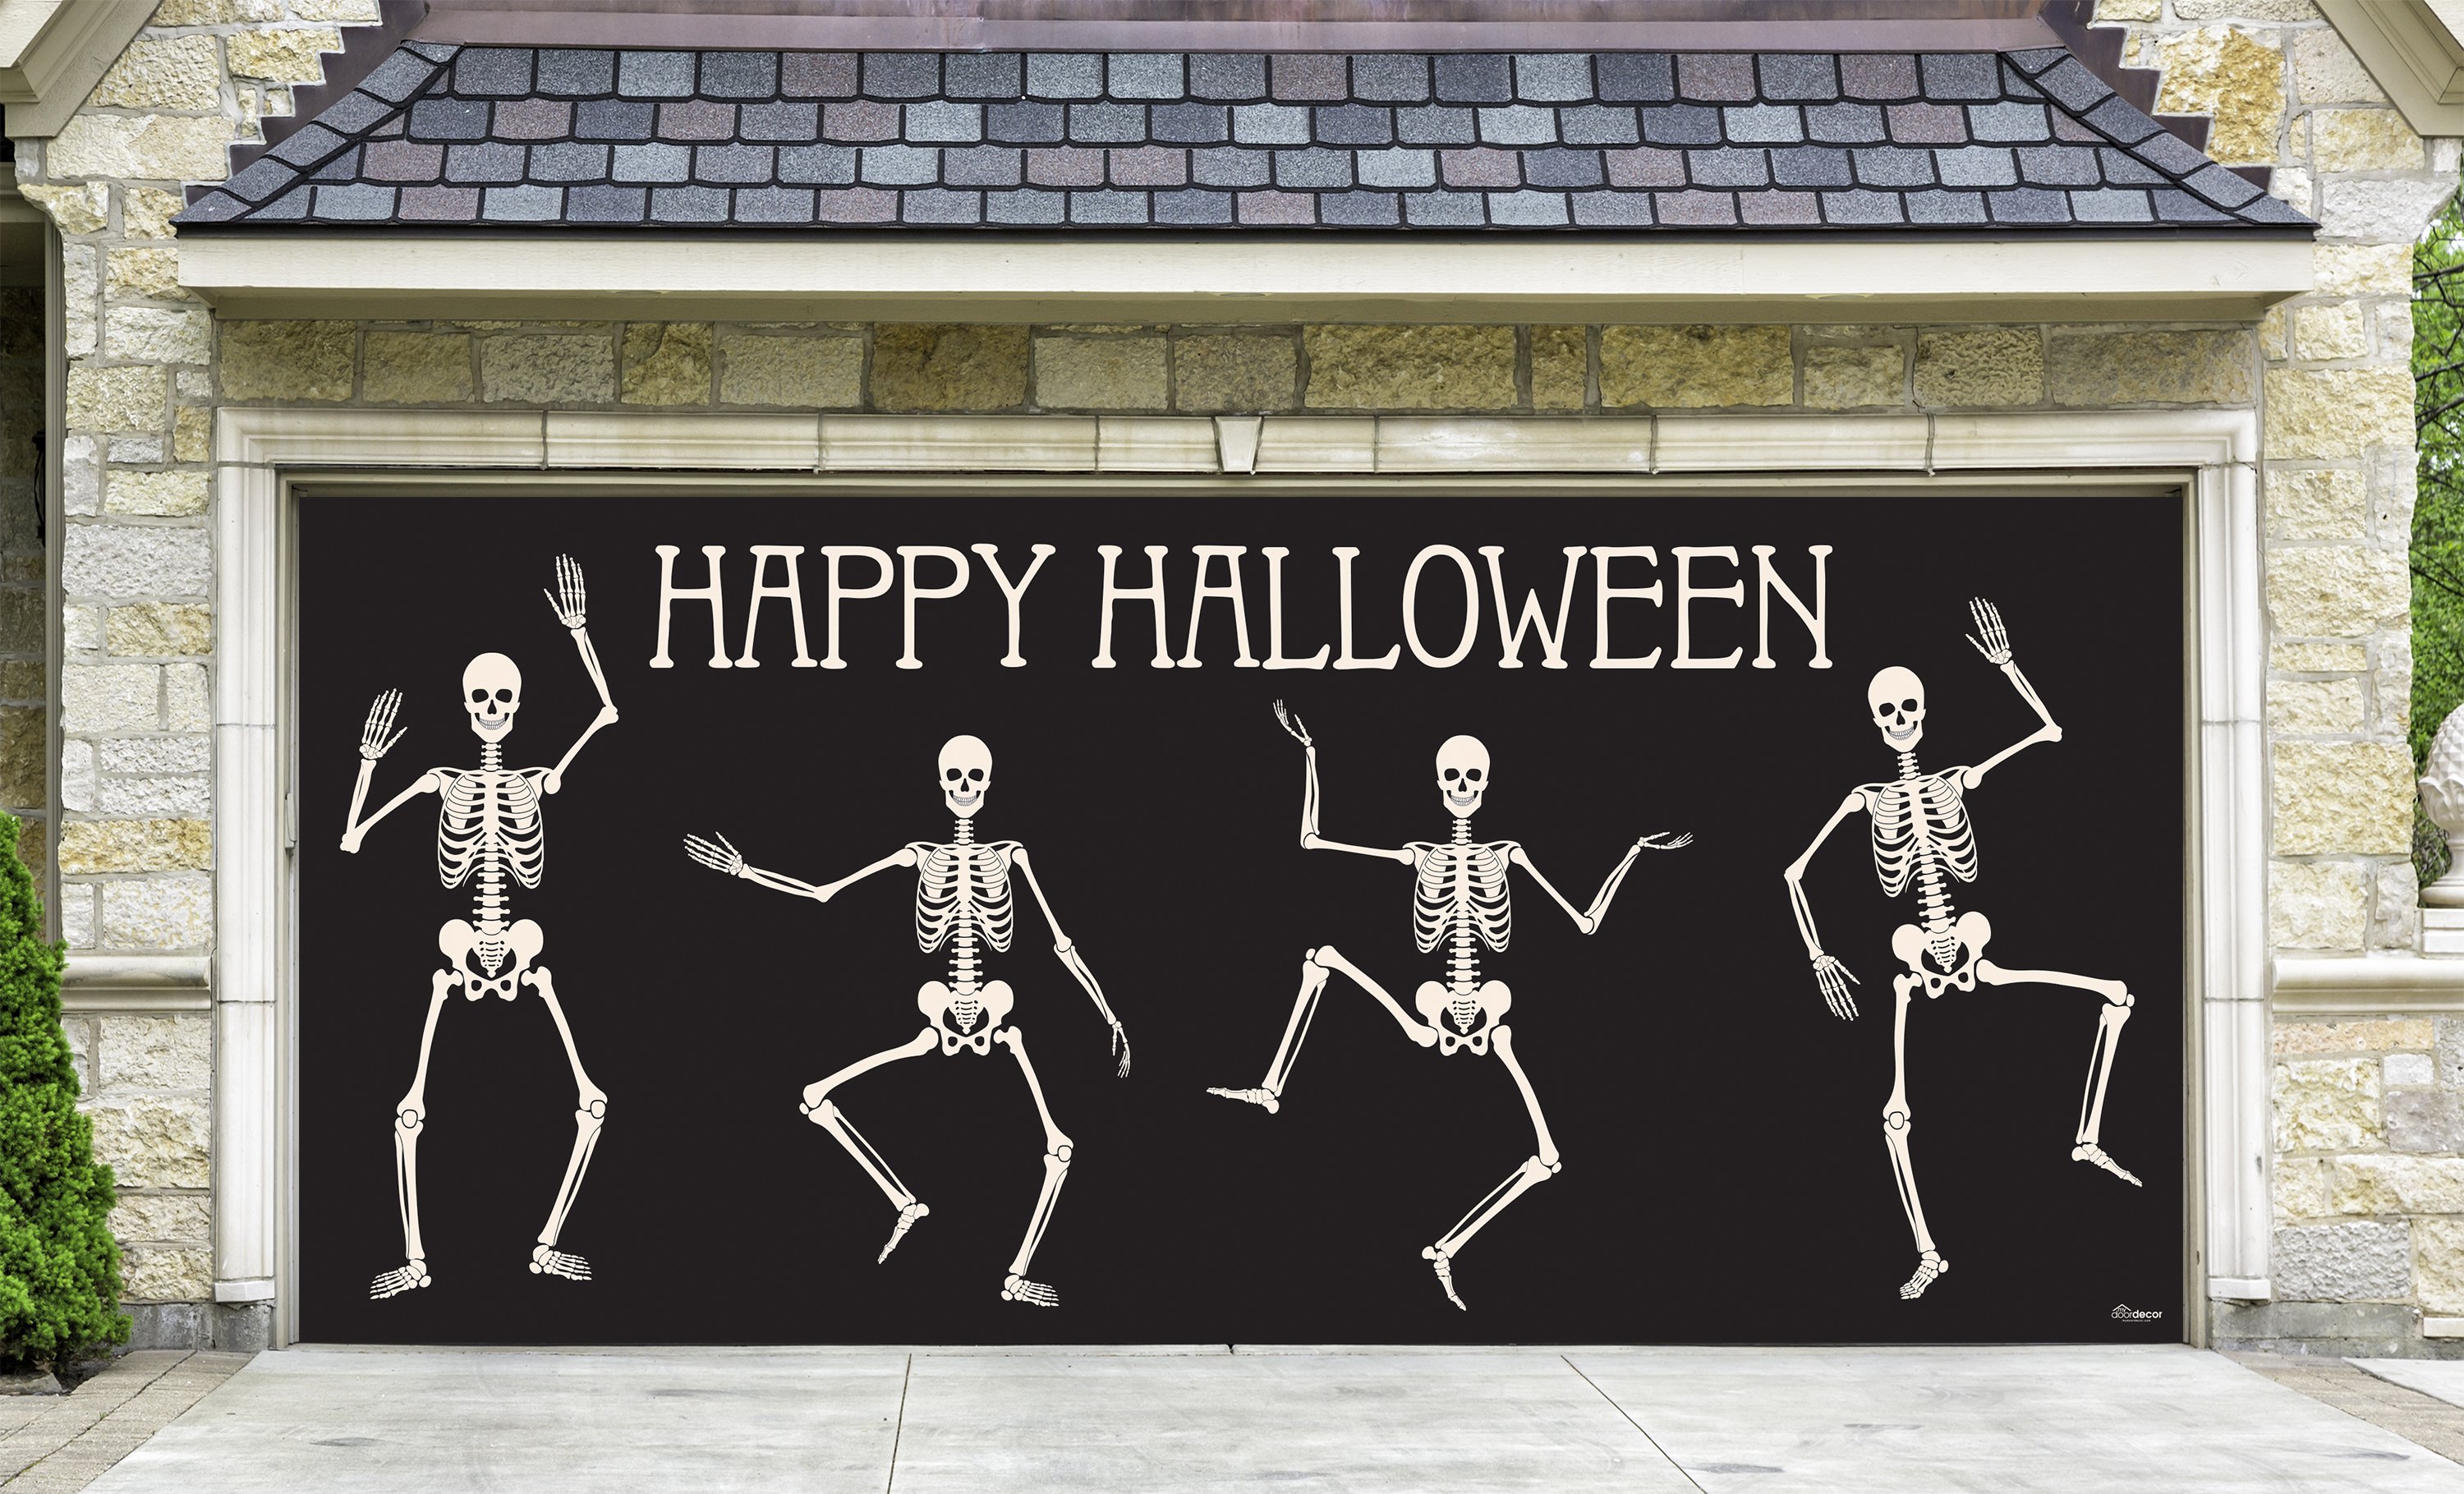 285905hall-016 7 X 16 Ft. Happy Halloween Skeletons Halloween Door Mural Sign Car Garage Banner Decor, Multi Color